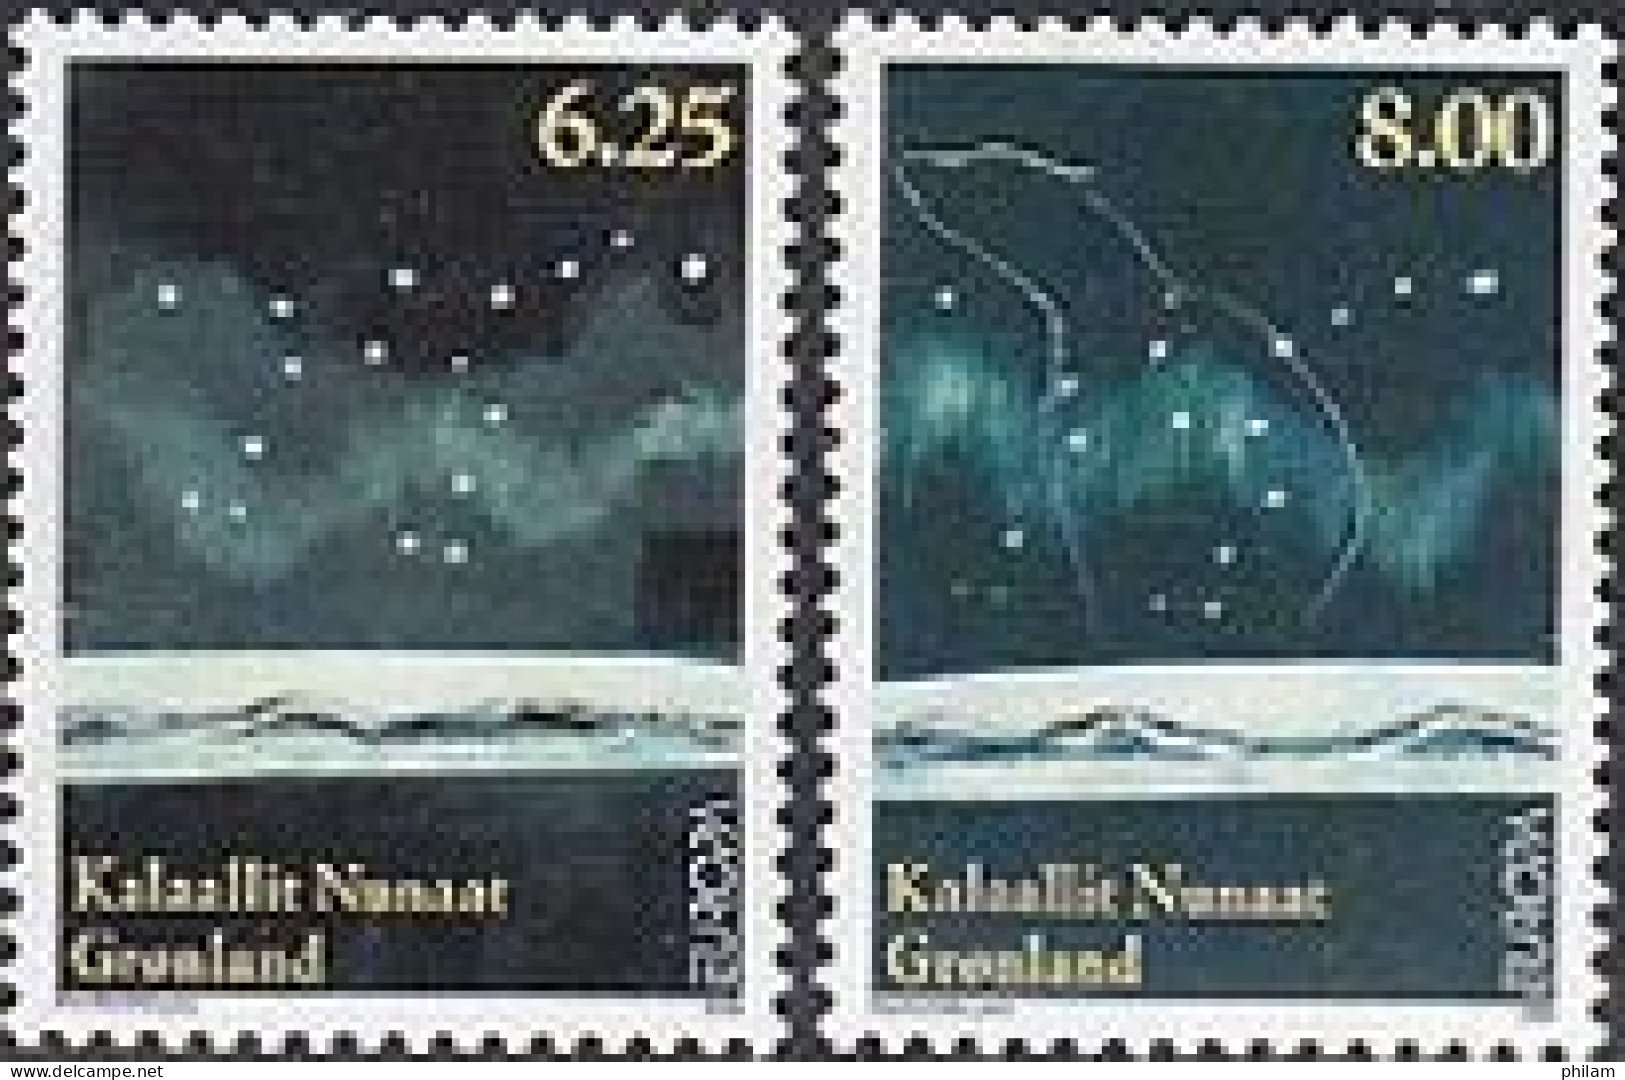 GROENLAND 2009 - Europa - L'astronomie -  Gommés - 2 V. - Ongebruikt